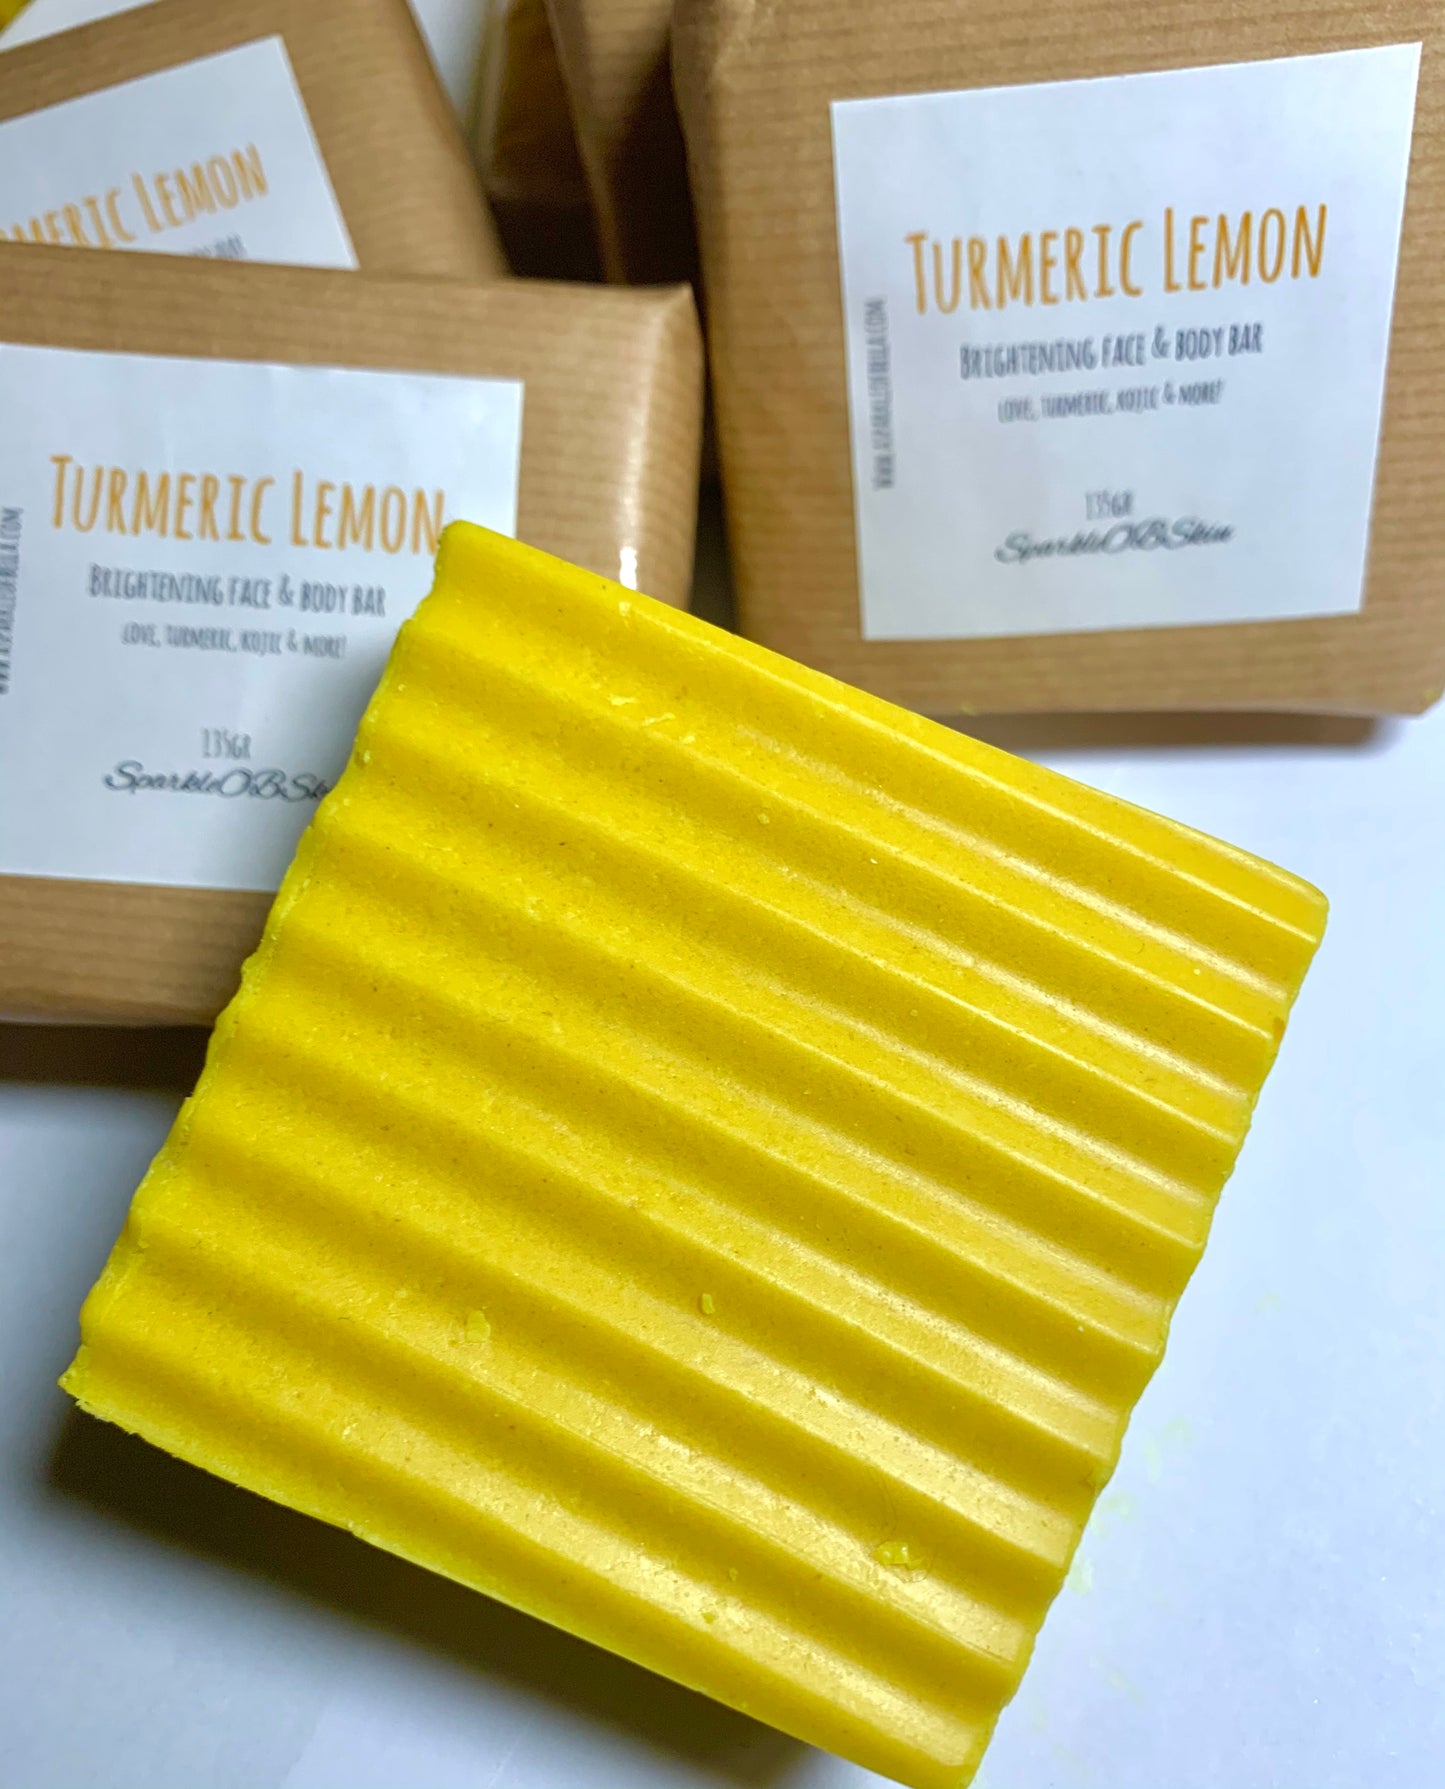 Turmeric Lemon Bar / Face & Body